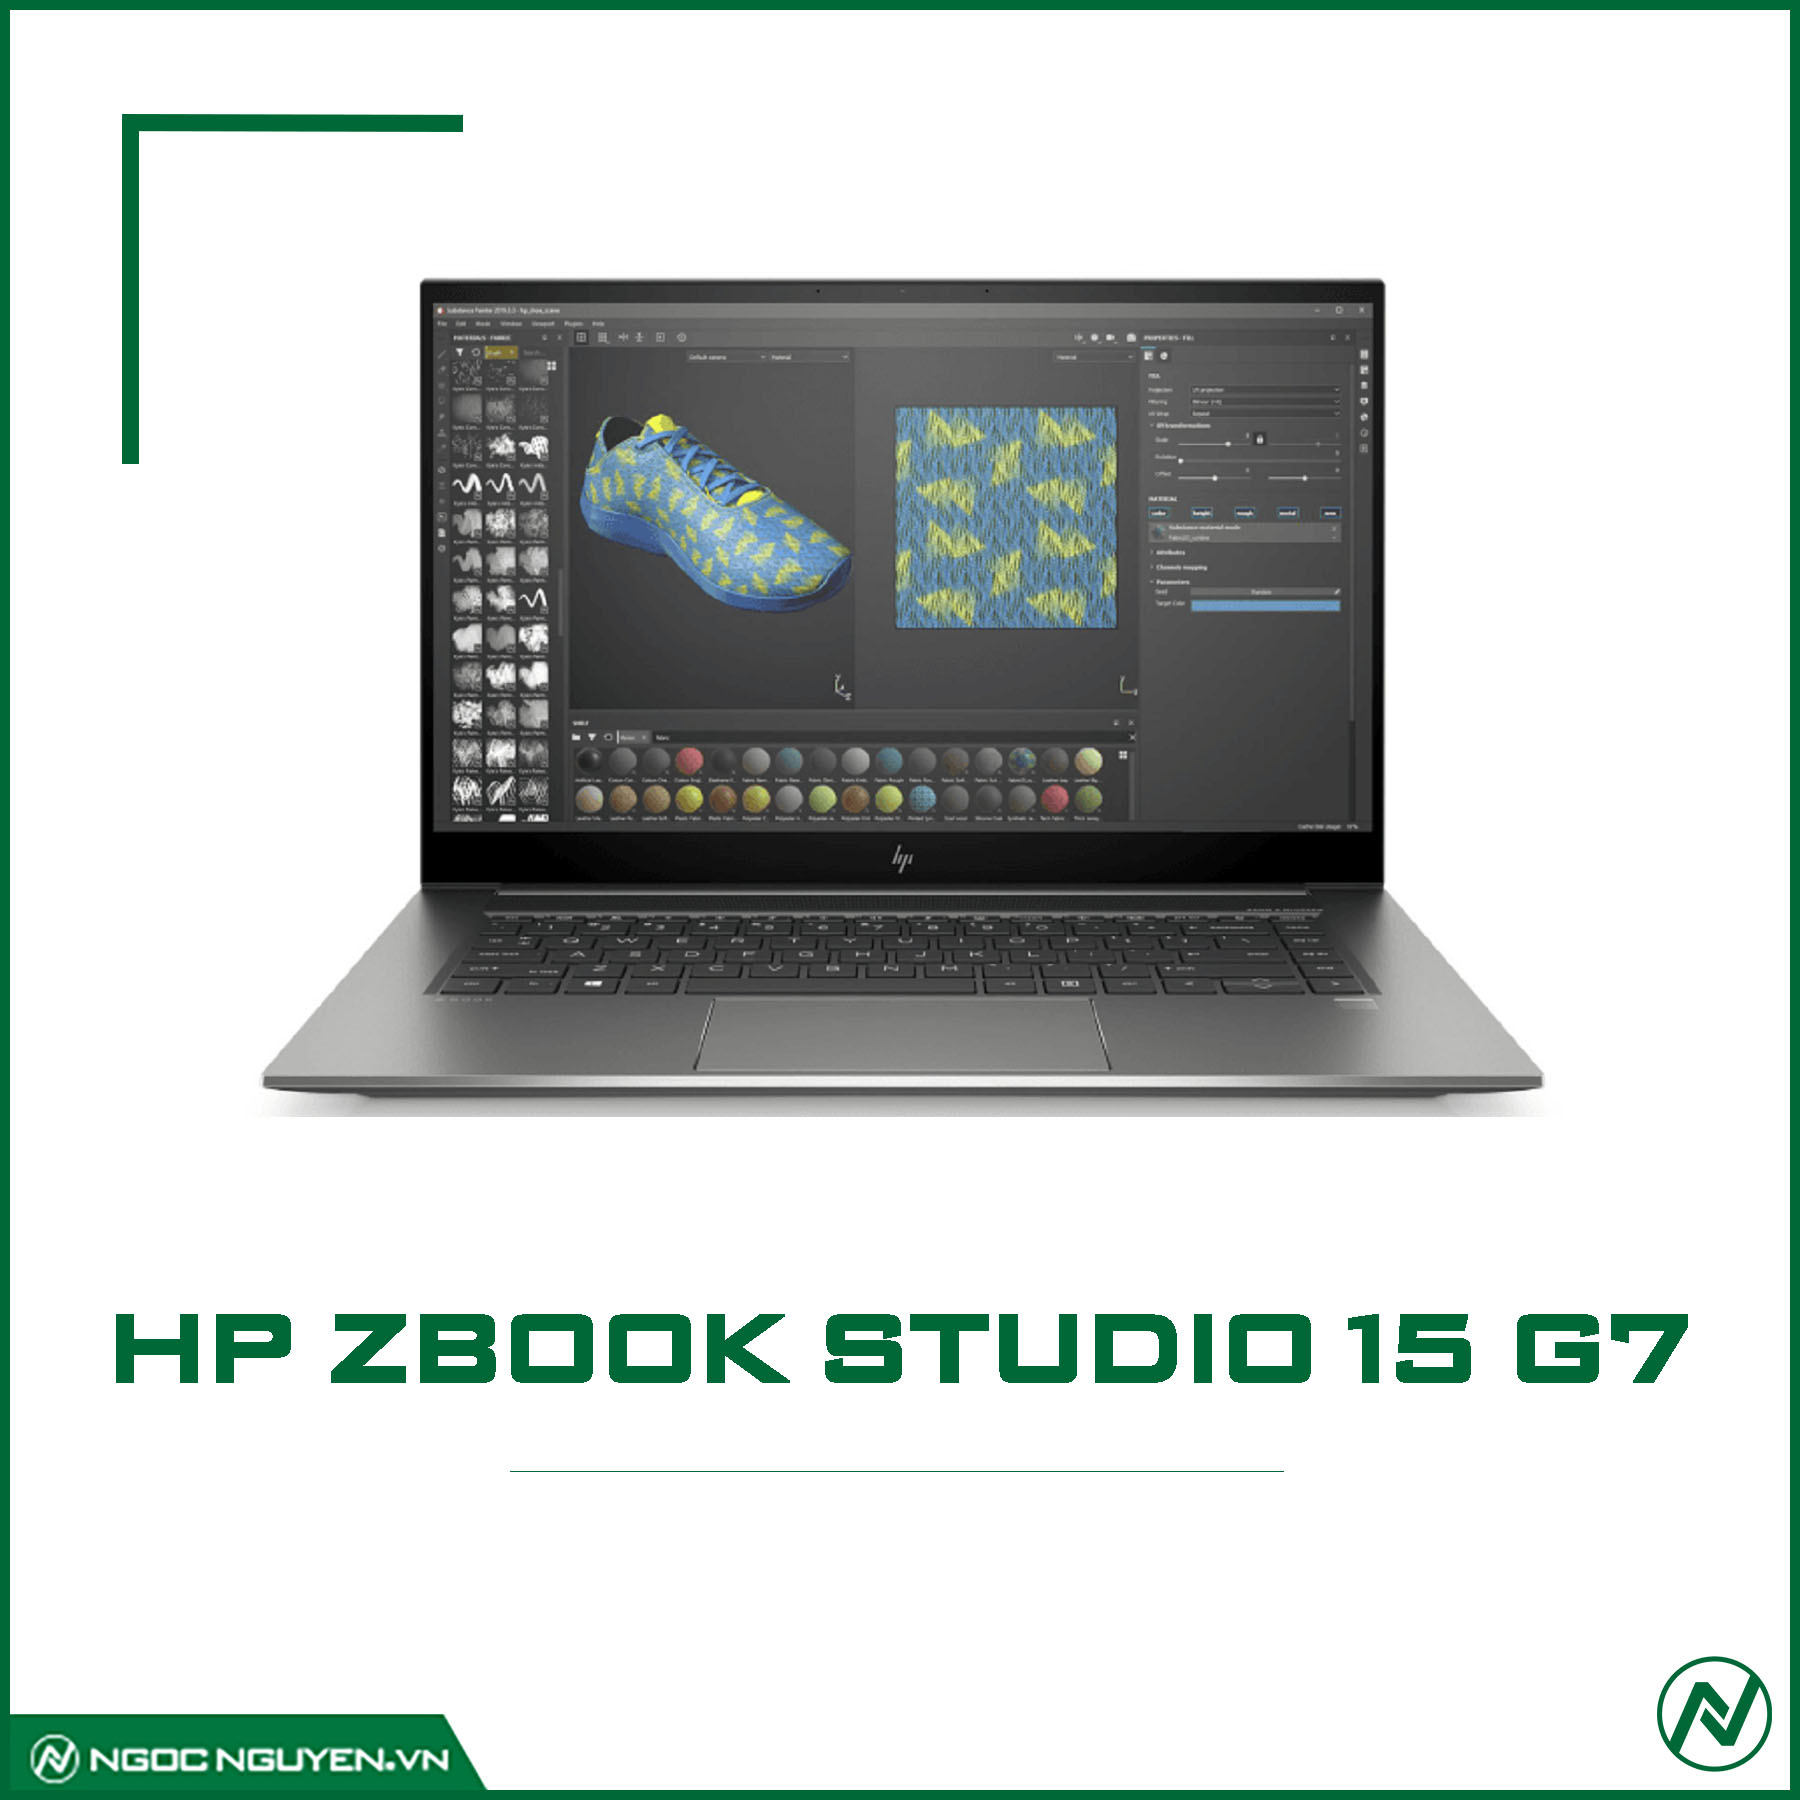 HP Zbook 15 G7 Studio i7-10850H/ RAM 16GB/ SSD 256GB/ T1000/ 15.6 INCH FHD